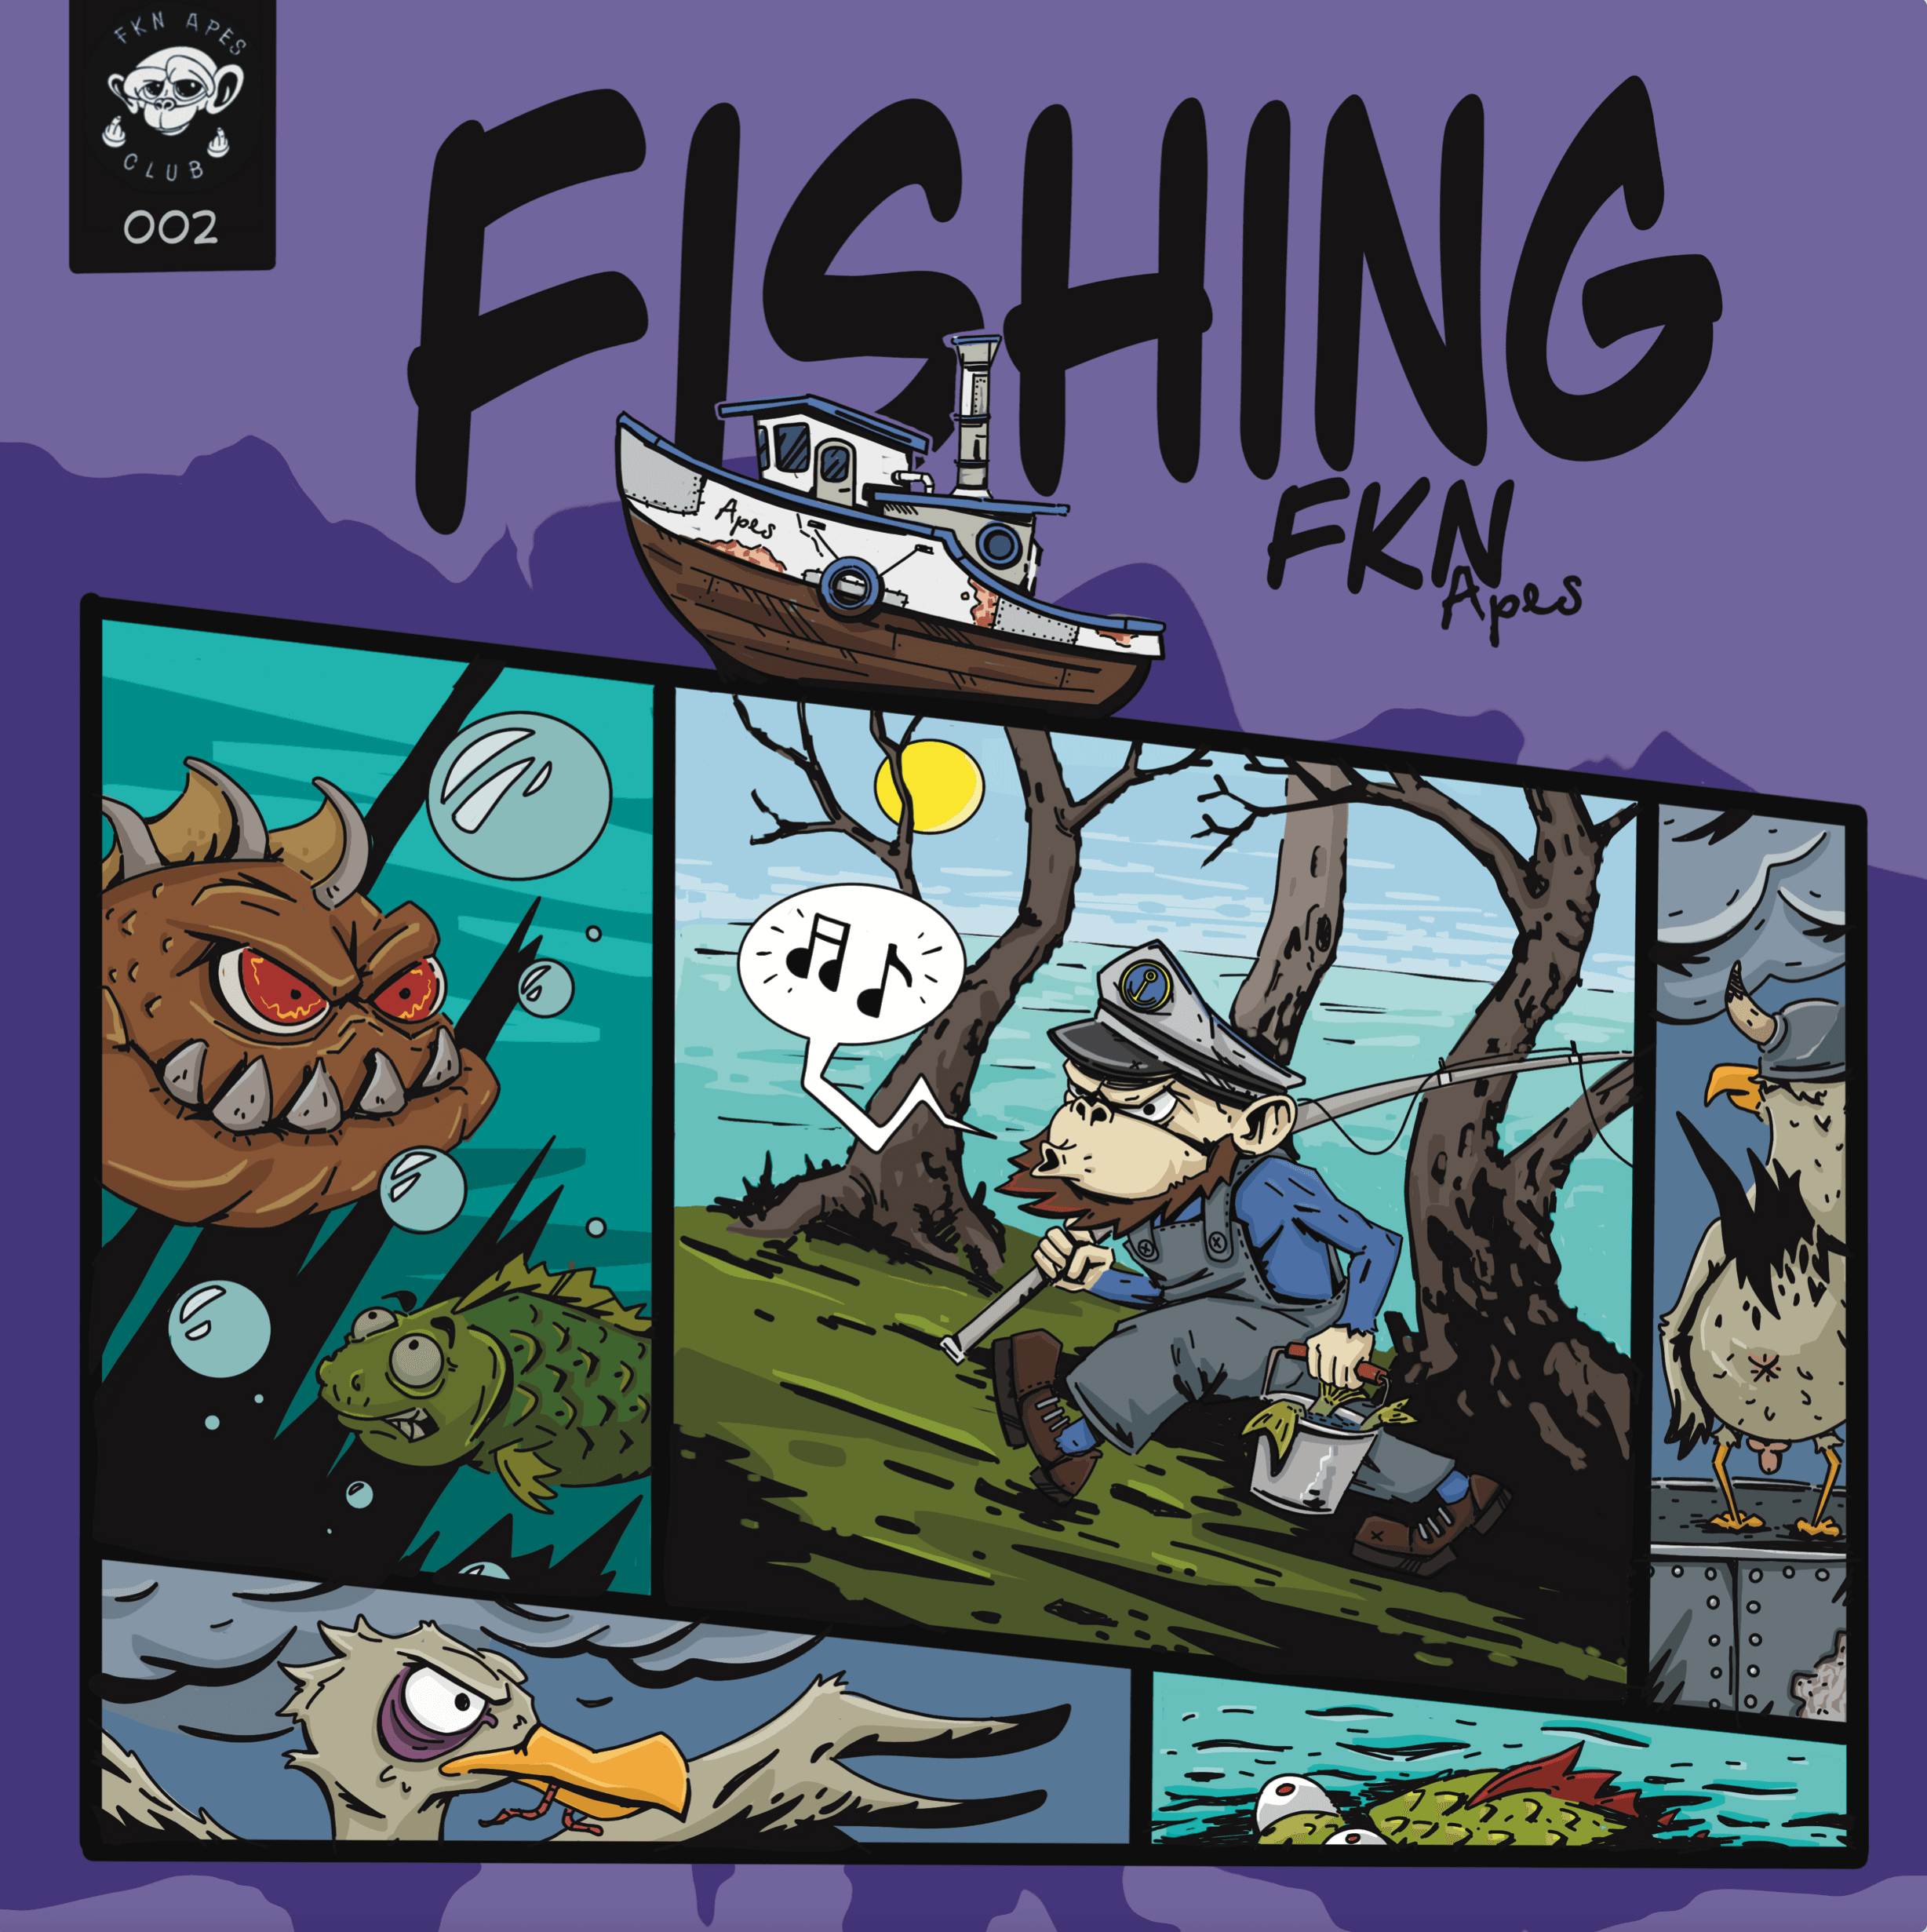 Fkn Apes Comics #2 "Fishing"